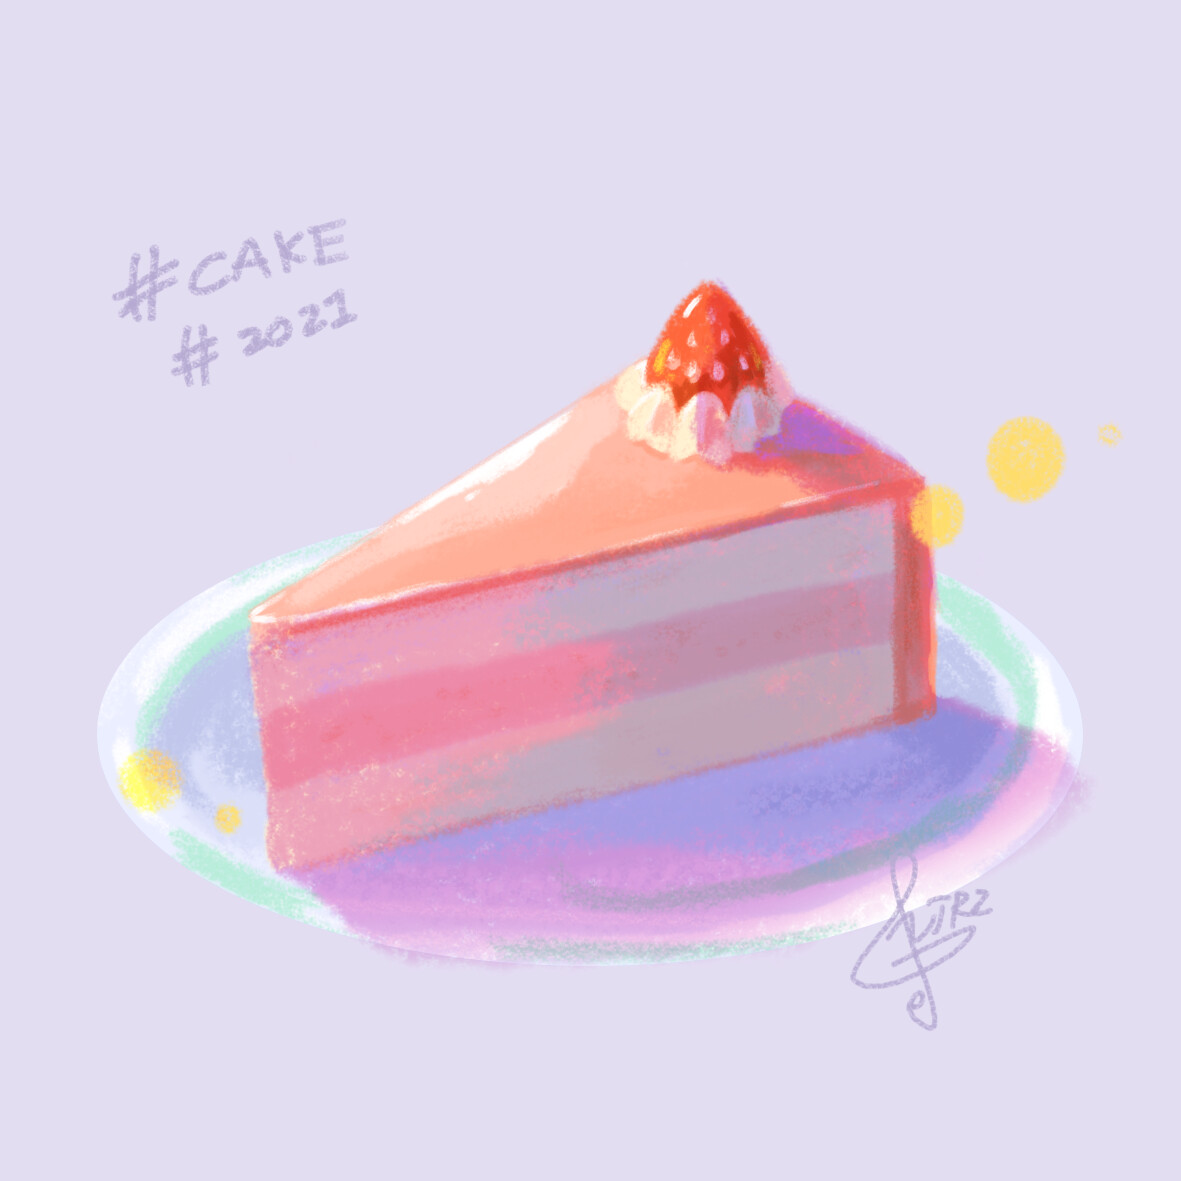 ArtStation - cake